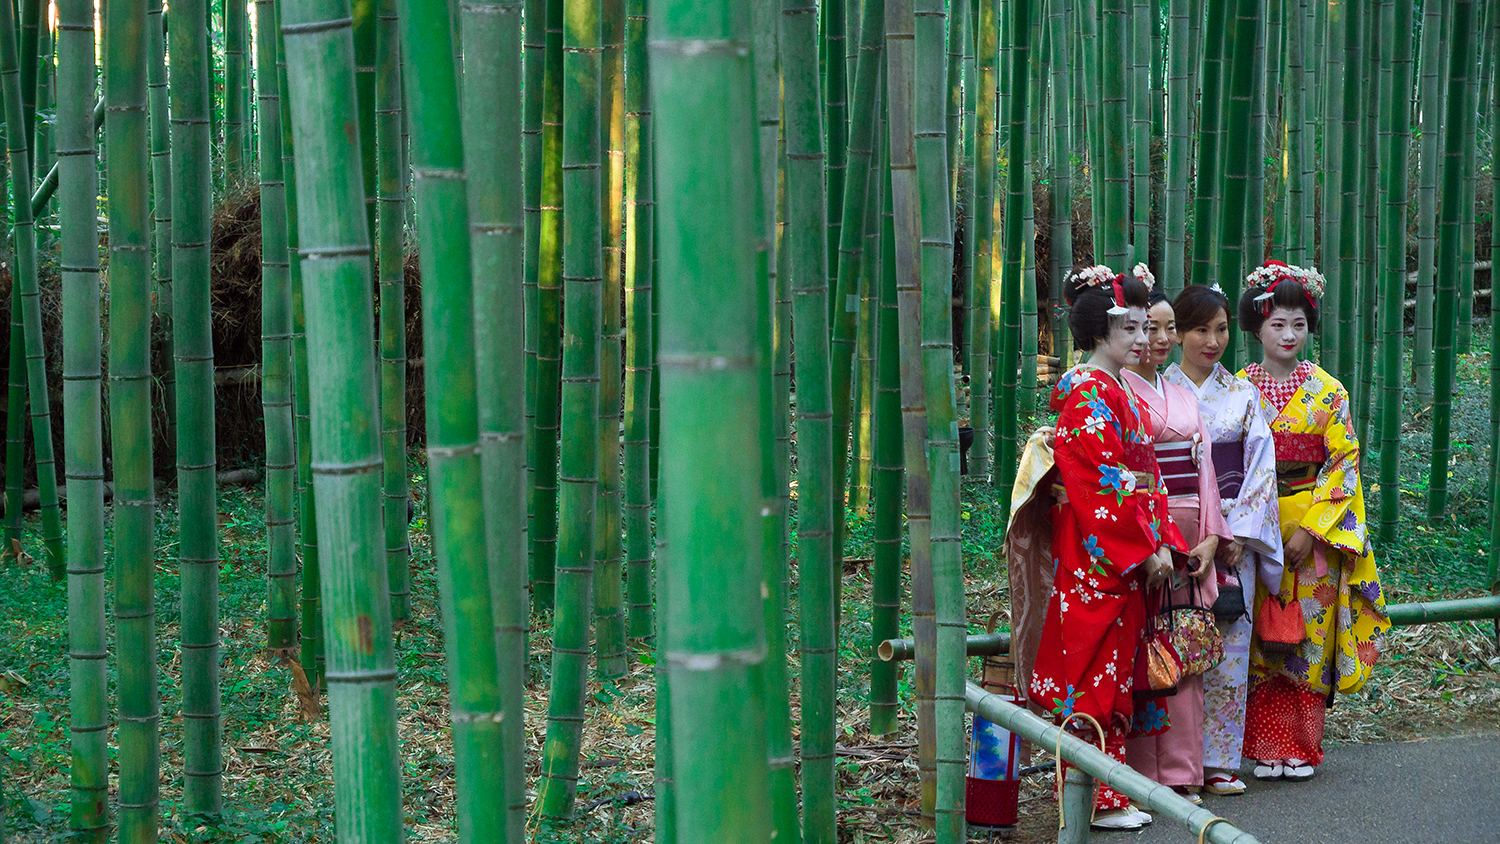 Japanische Geishas posieren in einem sattgrünen Bambushain